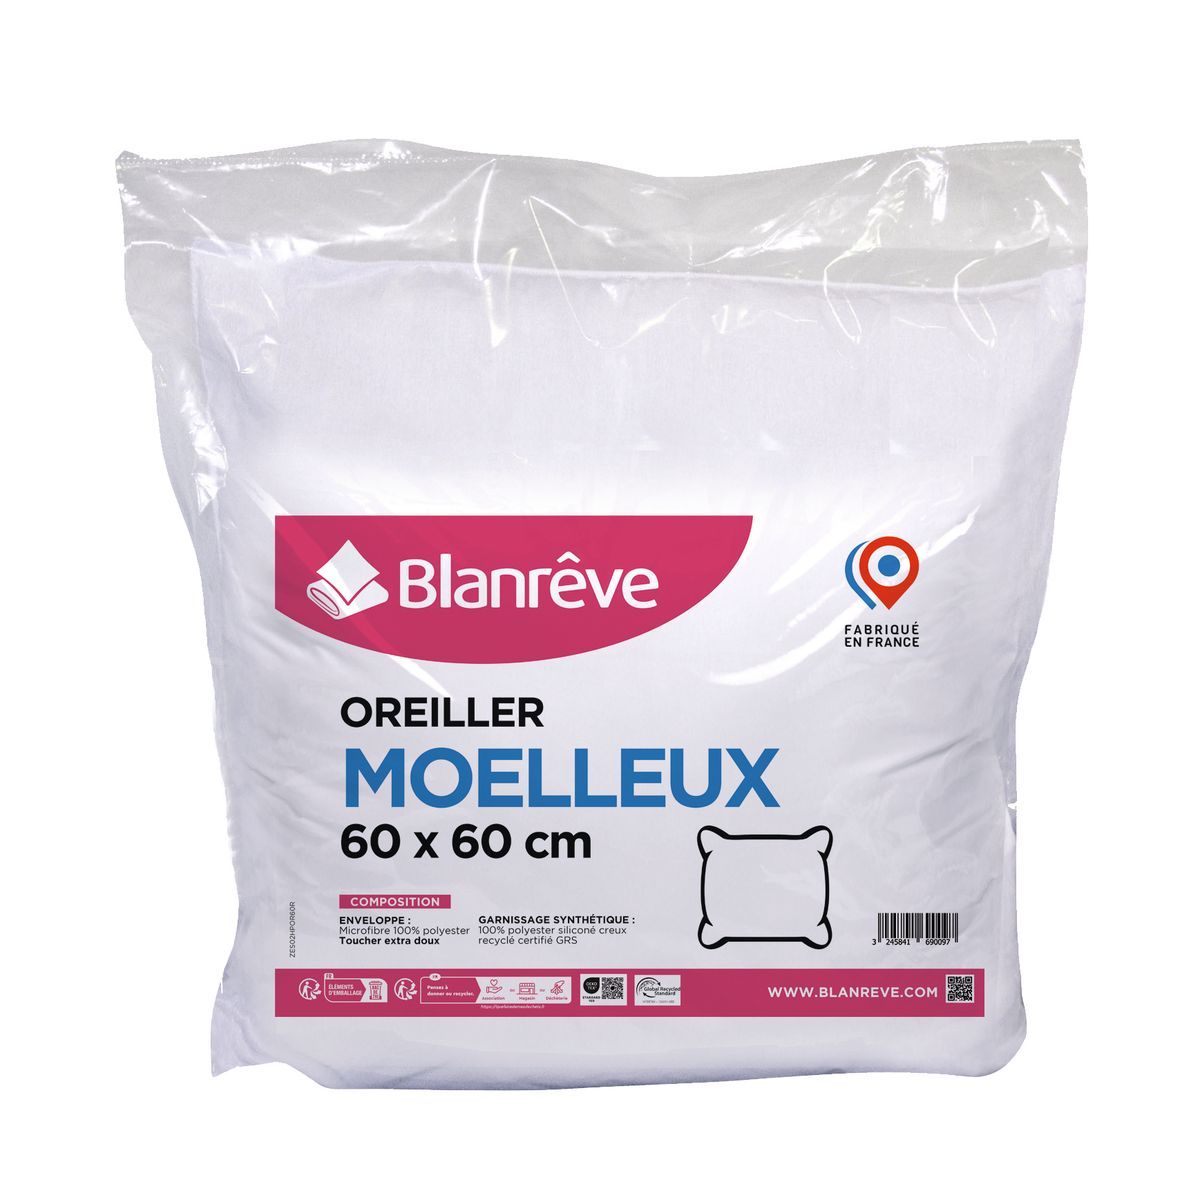 BLANREVE Oreiller confort moelleux en microfibre anti acariens 